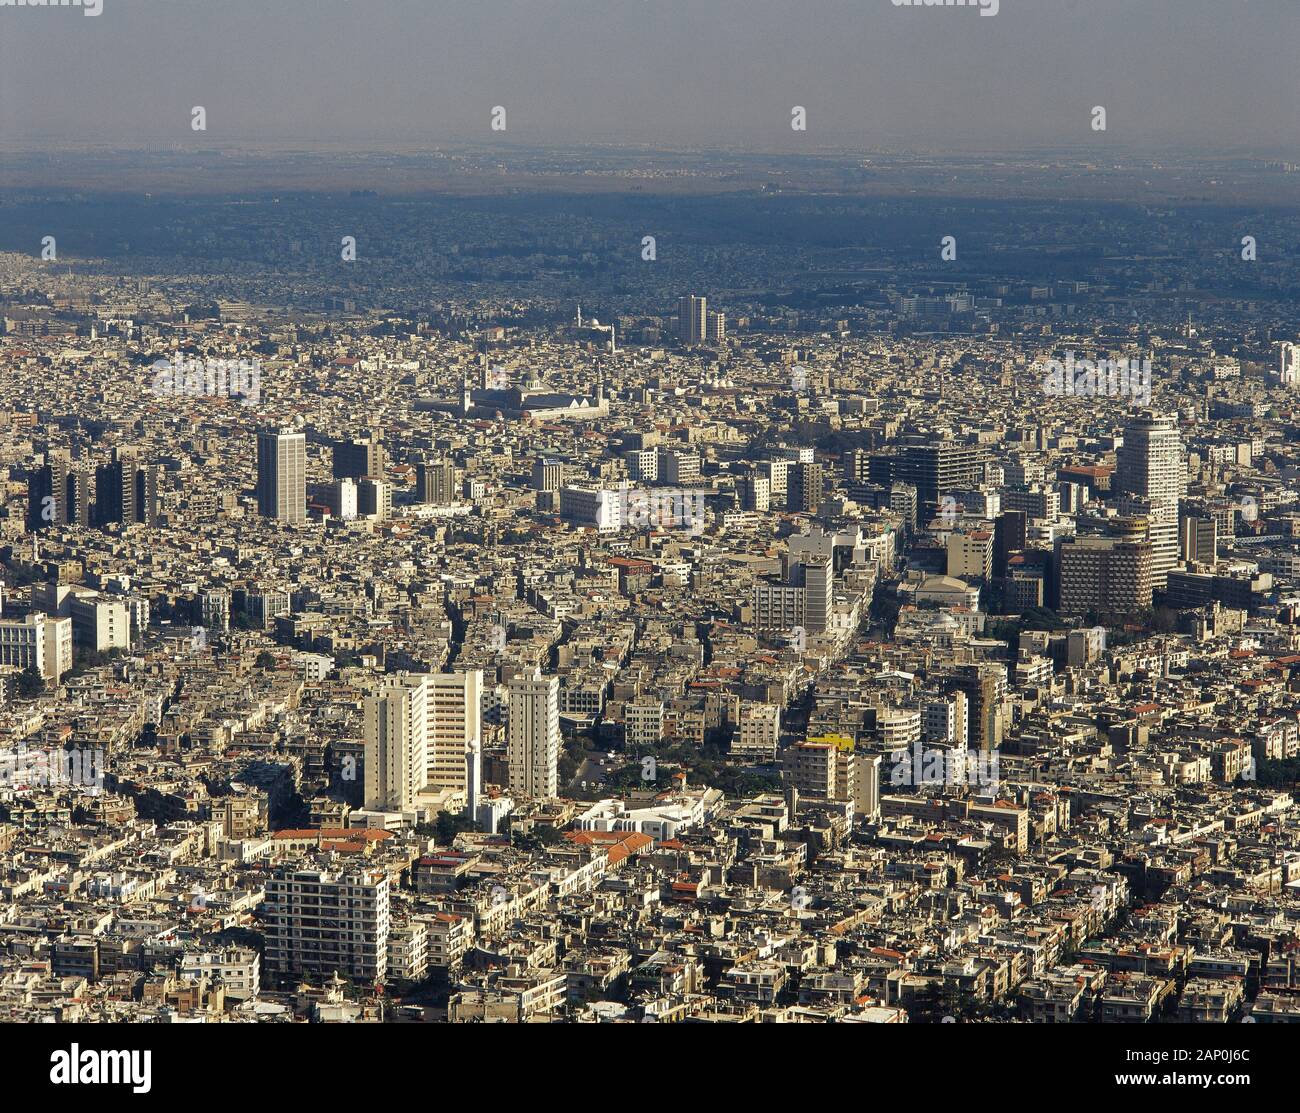 Arabische Republik Syrien. Damaskus. Panoramablick über die Stadt. Foto vor dem syrischen Bürgerkrieg. Stockfoto